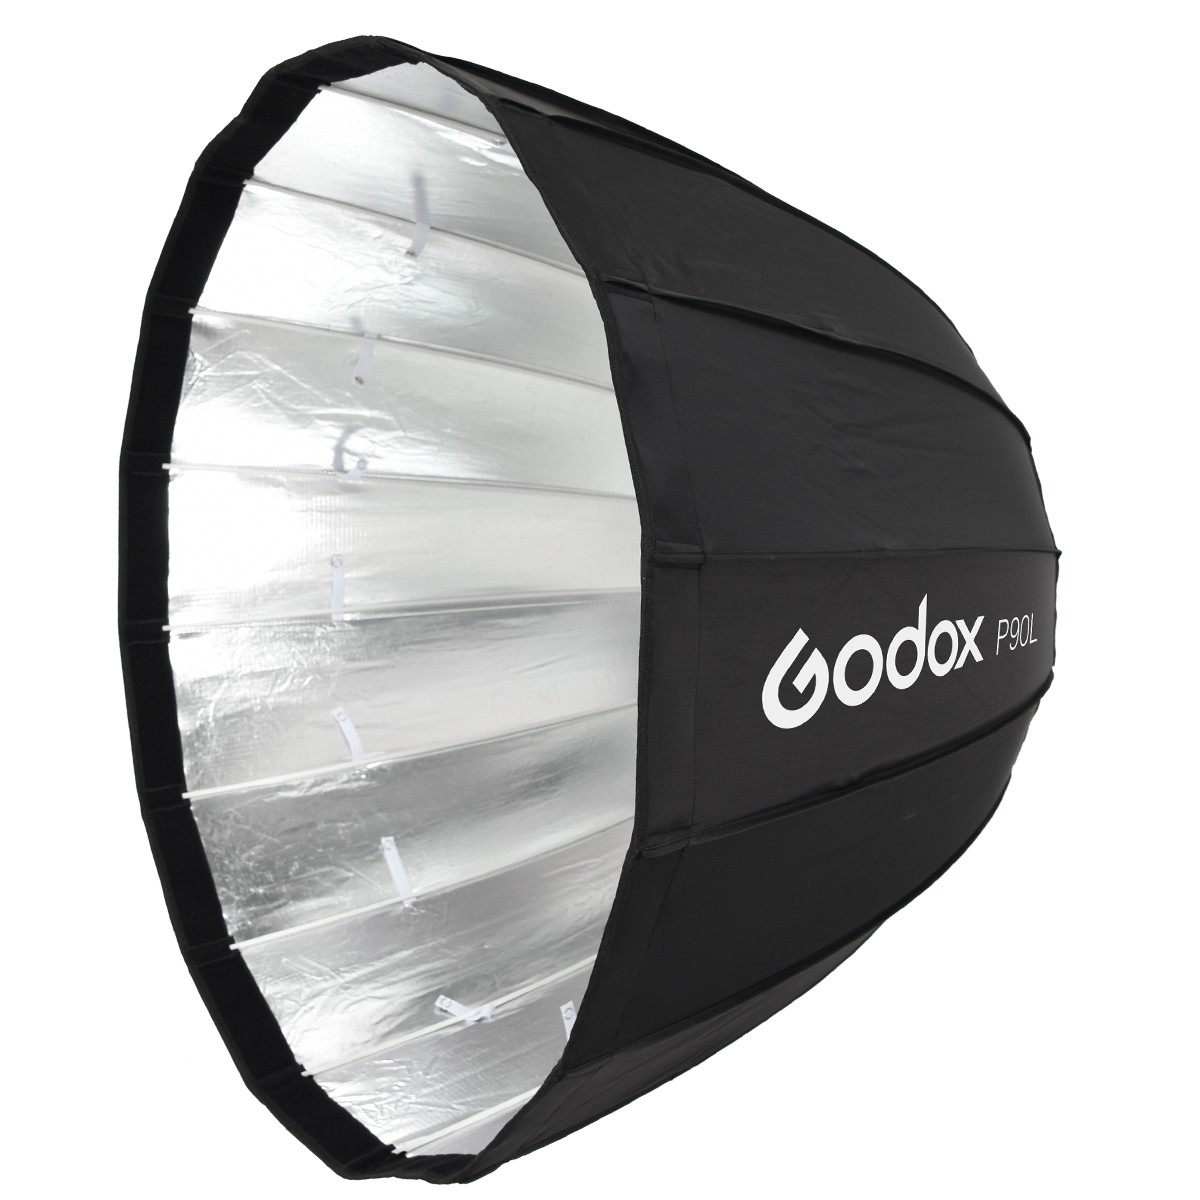 Godox P90L Parabol Softbox 90 cm